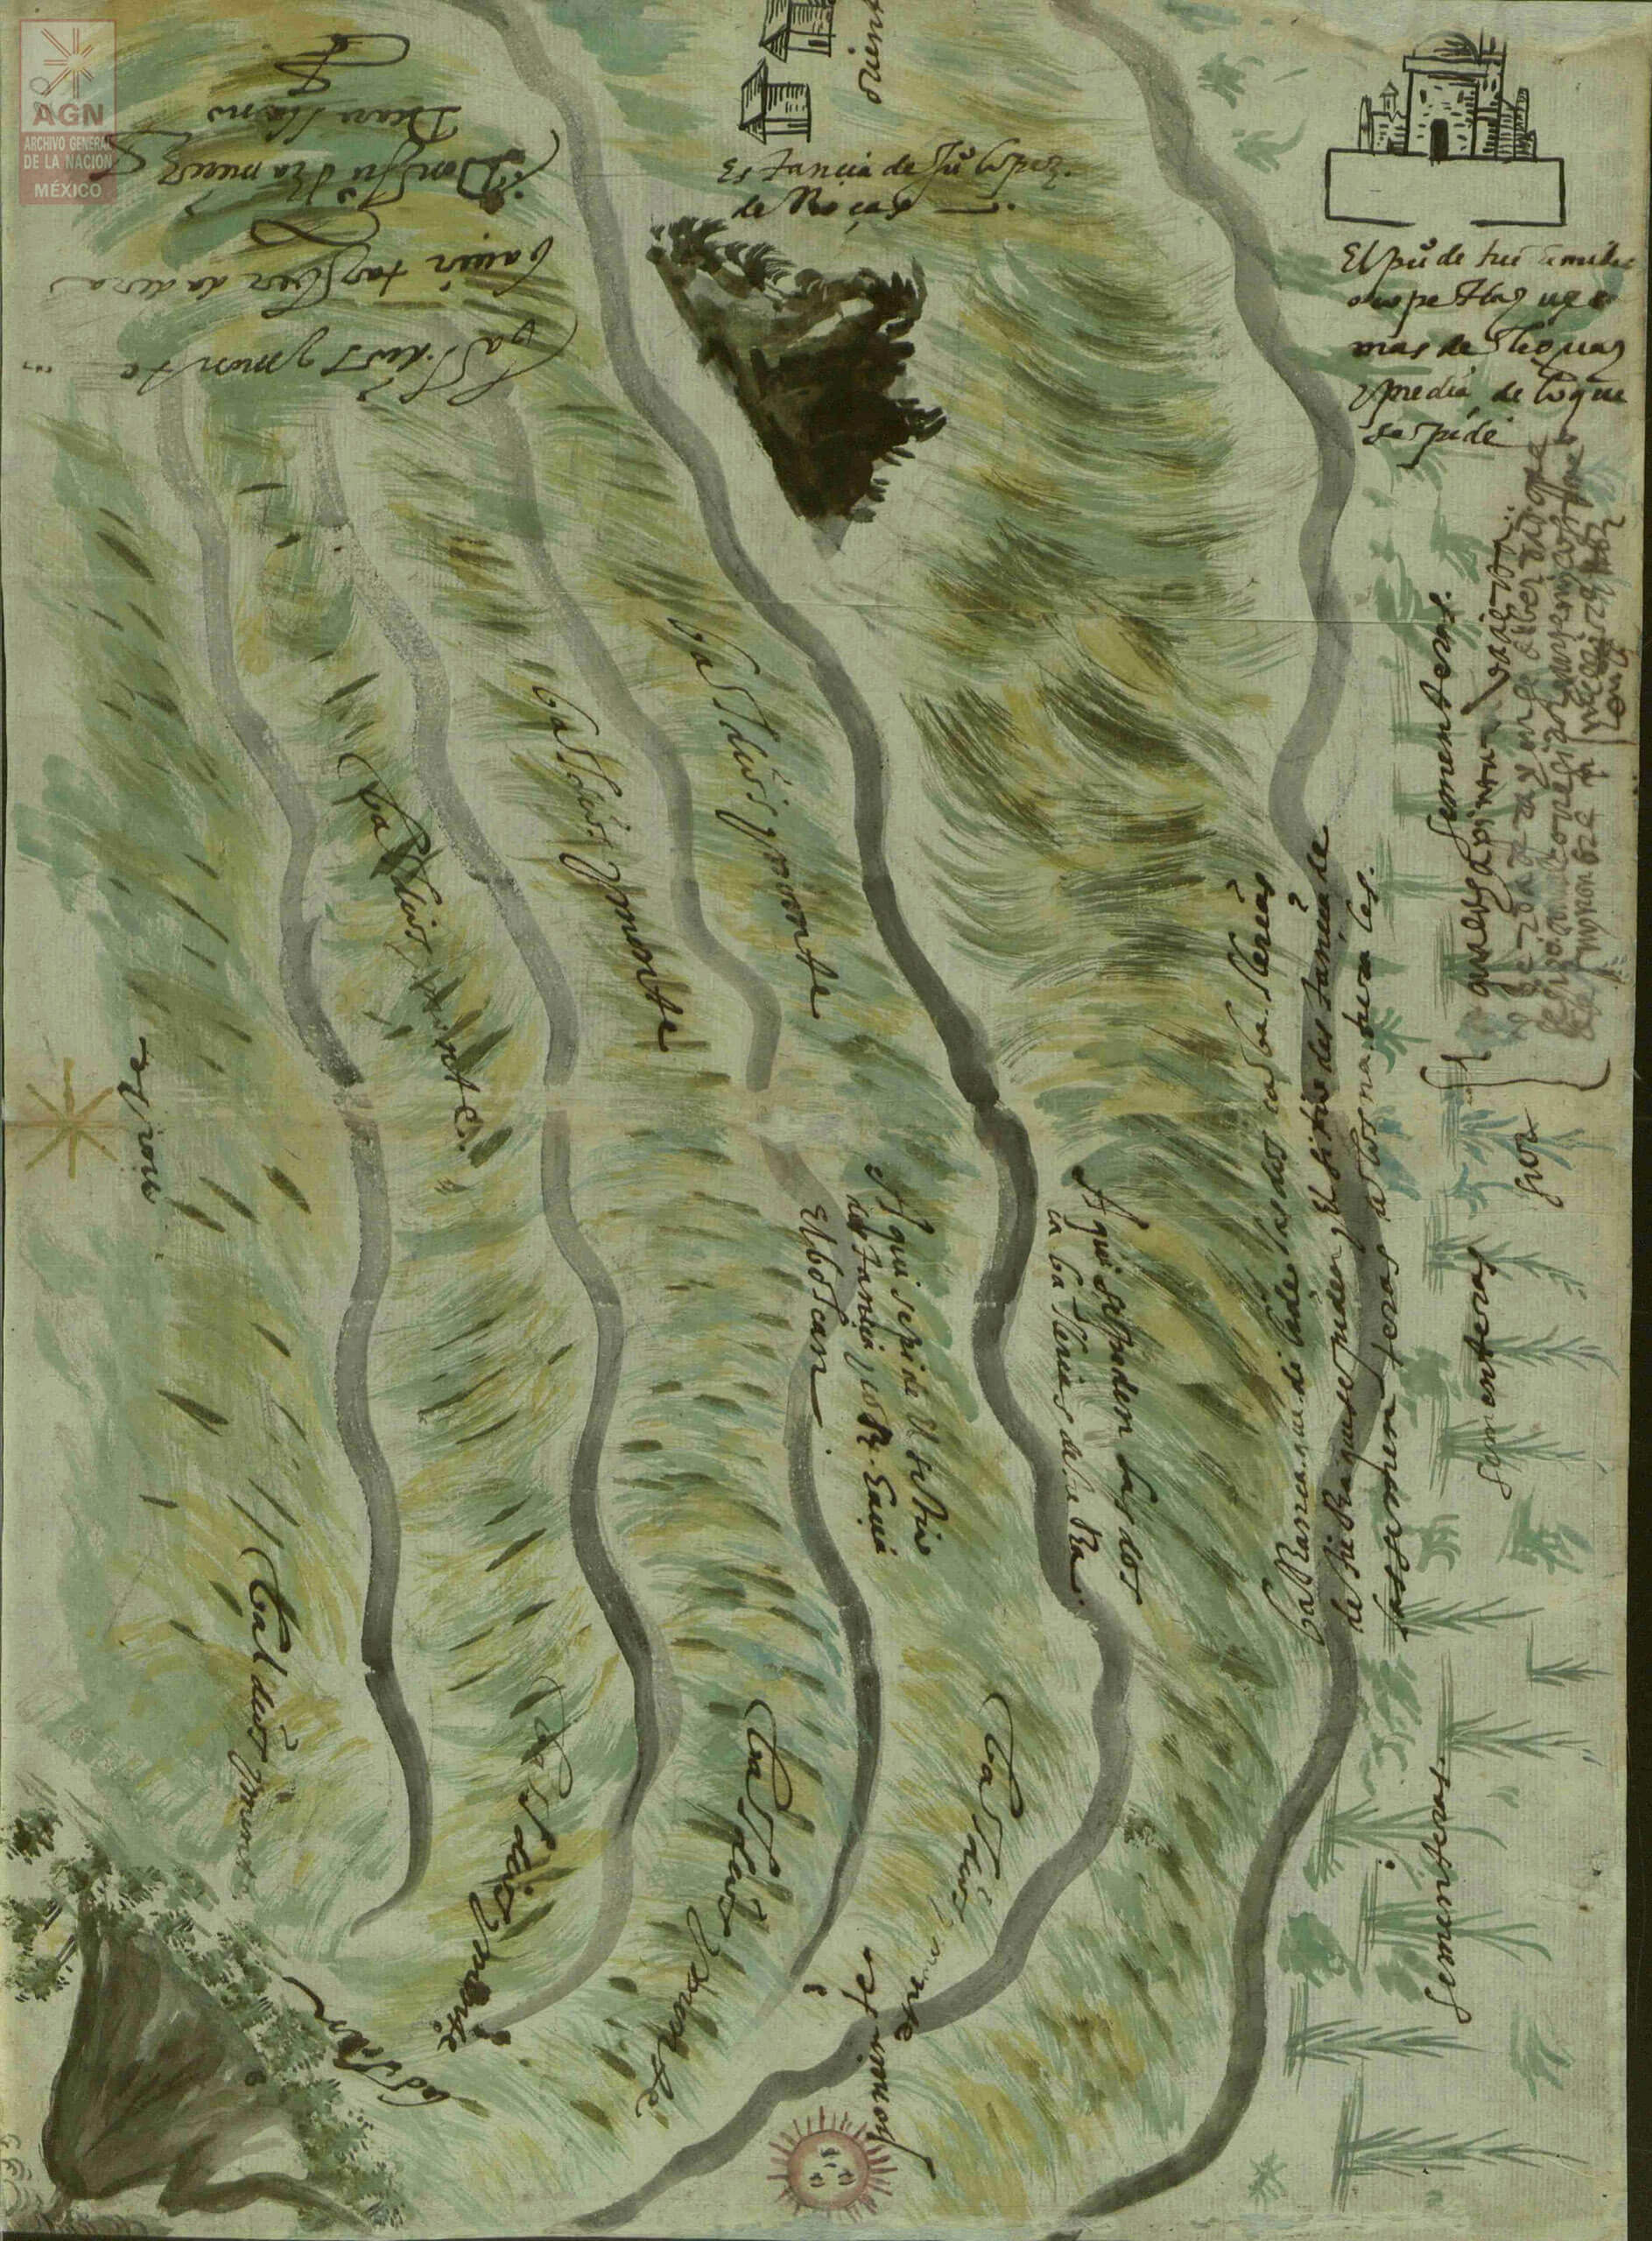 Mapa de Tochimilco, Puebla | In Tlilli in Tlapalli. Imágenes de la nueva tierra: identidad indígena después de la conquista | Museo Amparo, Puebla